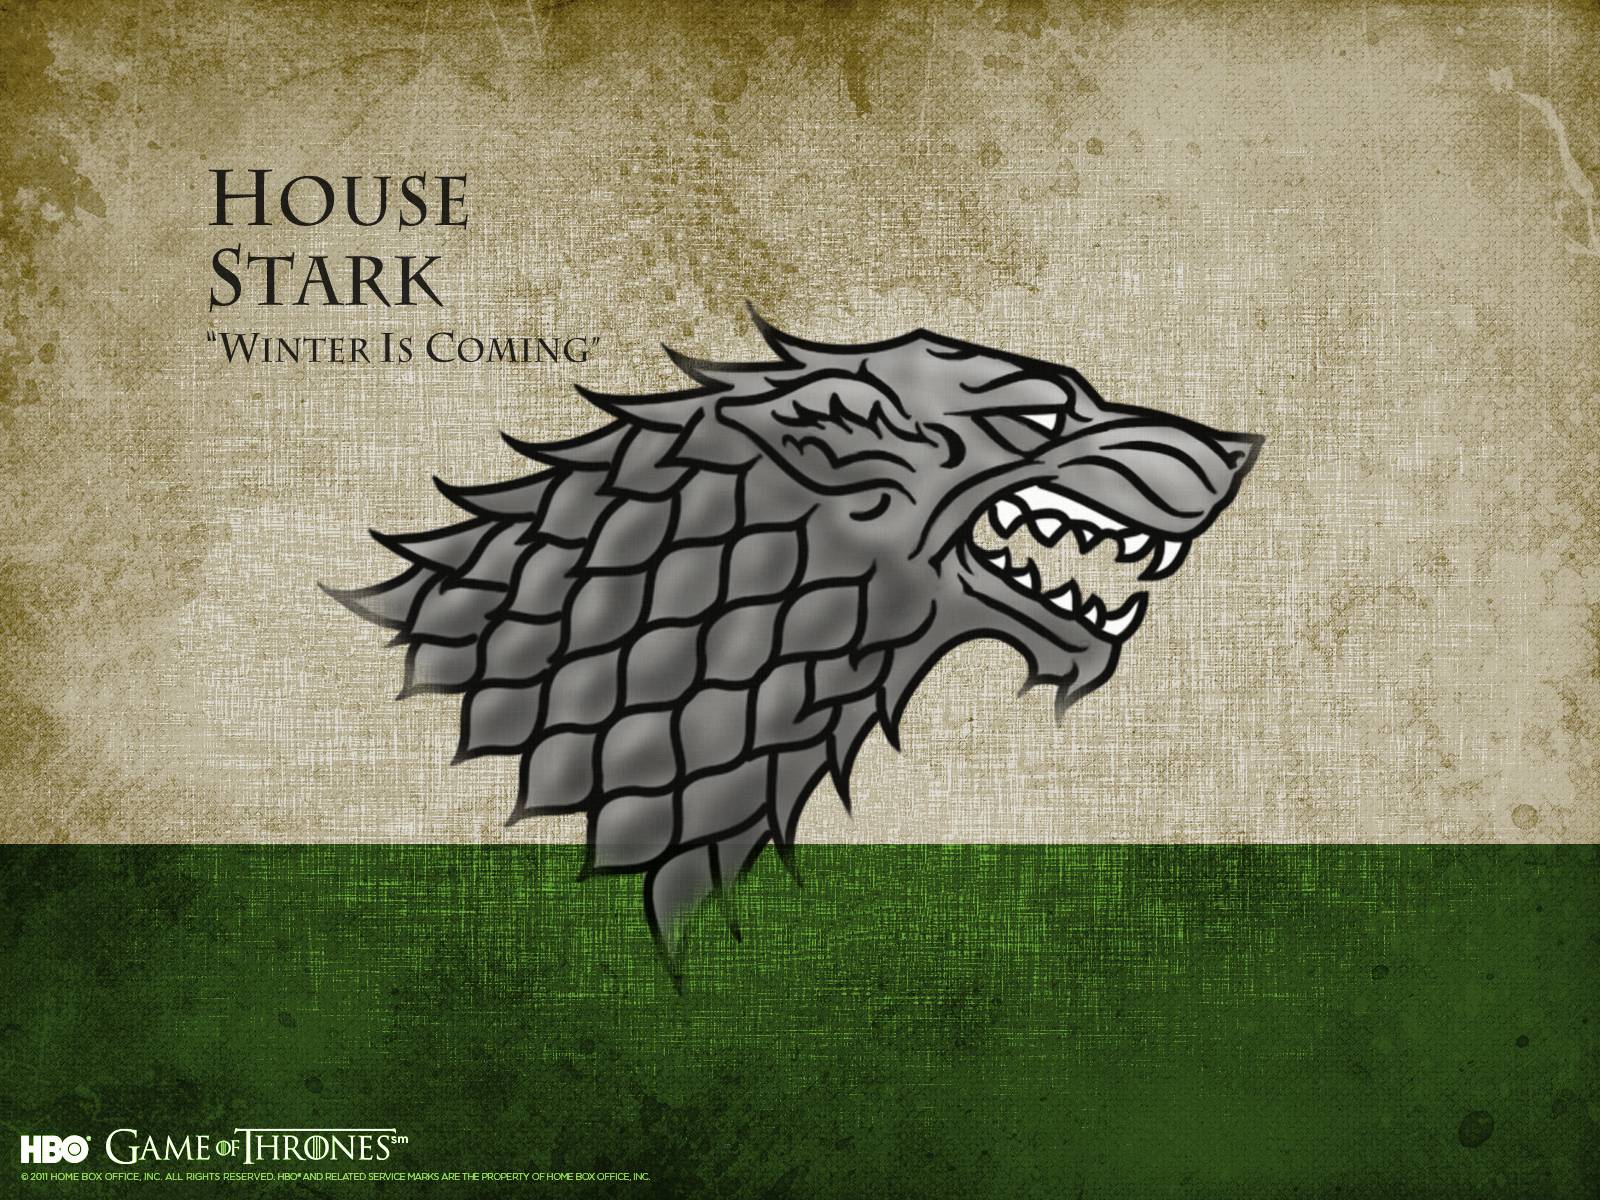 House Stark of Thrones Wallpaper